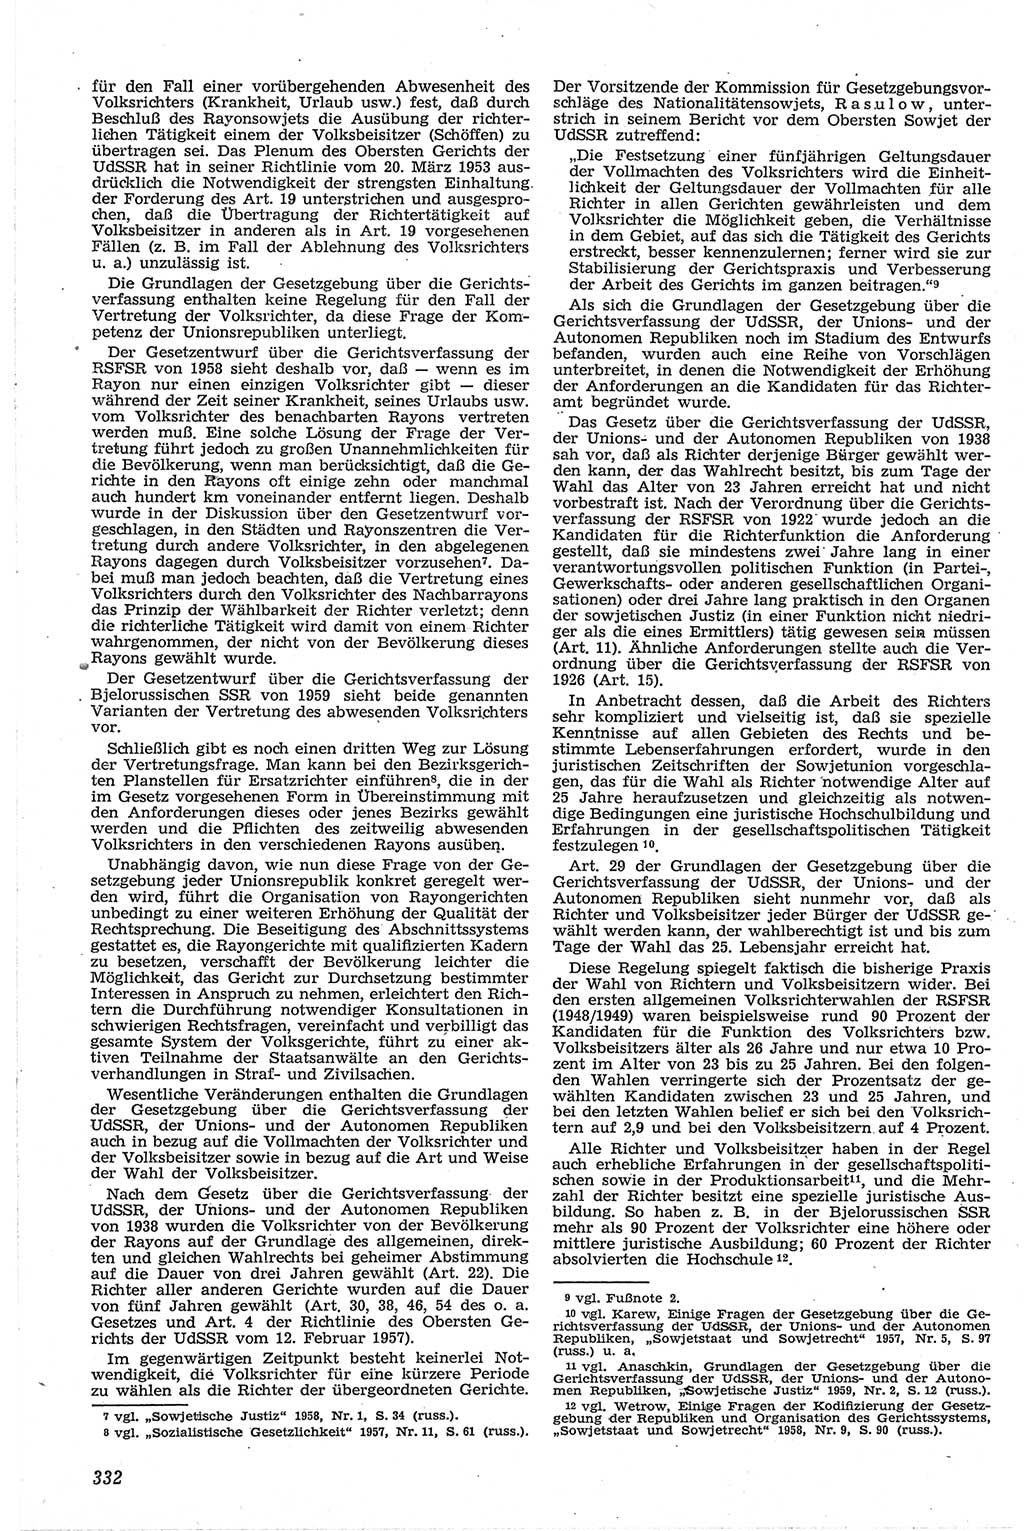 Neue Justiz (NJ), Zeitschrift für Recht und Rechtswissenschaft [Deutsche Demokratische Republik (DDR)], 13. Jahrgang 1959, Seite 332 (NJ DDR 1959, S. 332)